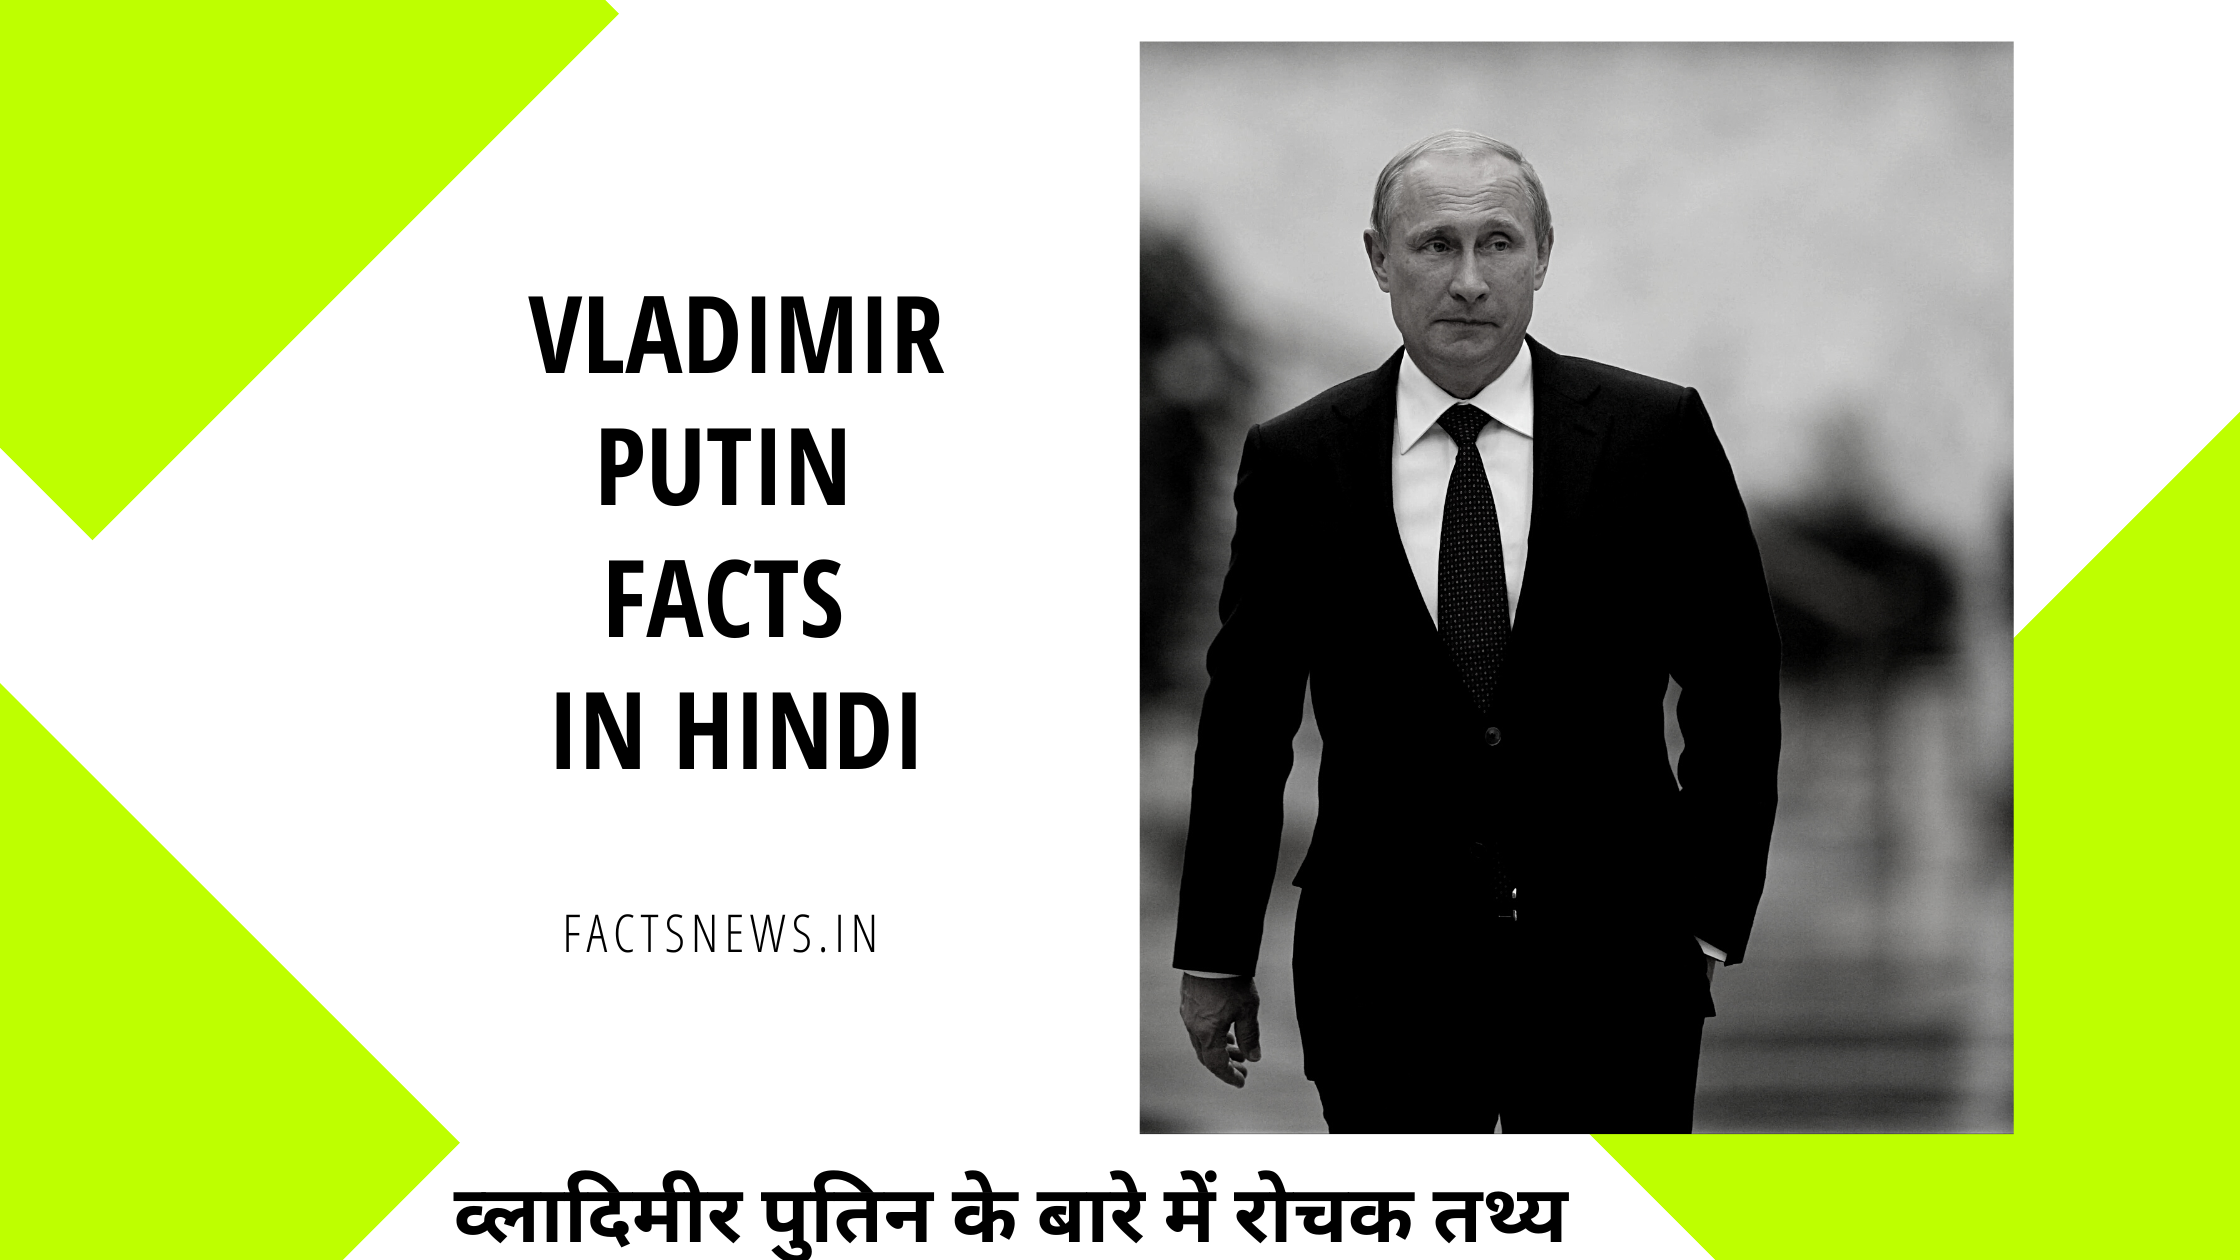 व्लादिमीर पुतिन के बारे में रोचक तथ्य | Vladimir Putin Facts In Hindi